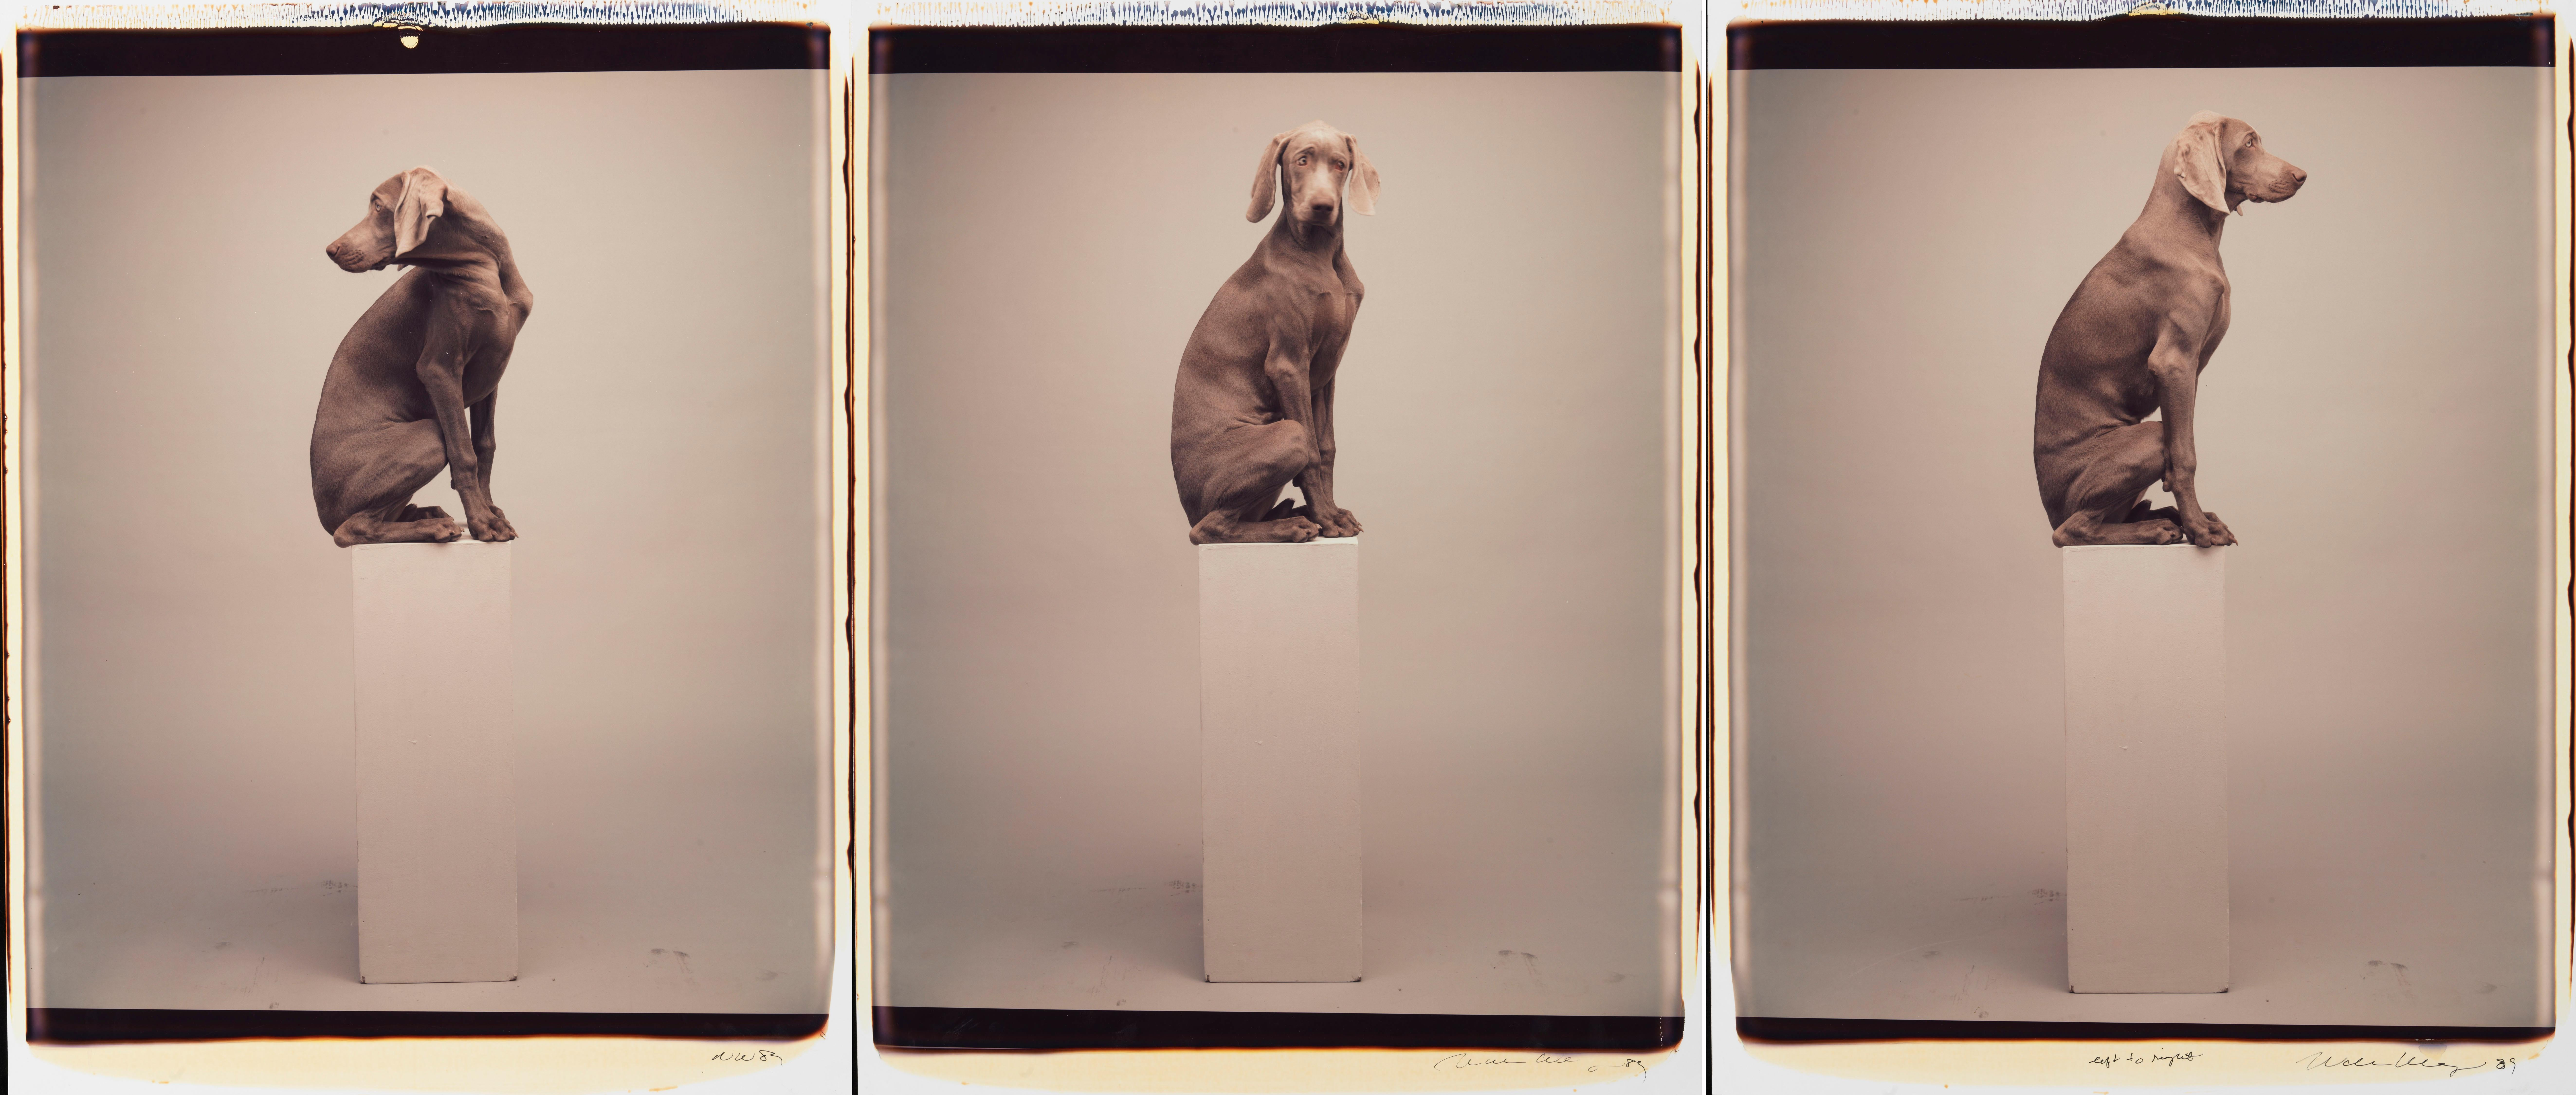 Von links nach rechts - William Wegman (Farbfotografie)
Signiert und beschriftet mit Titel
Drei einzigartige Farb-Polaroid-Abzüge, gedruckt 1989
jeweils 24 x 20 Zoll

Die Hunde, die mit Perücken, Kostümen und Requisiten ausgestattet sind, zeigen